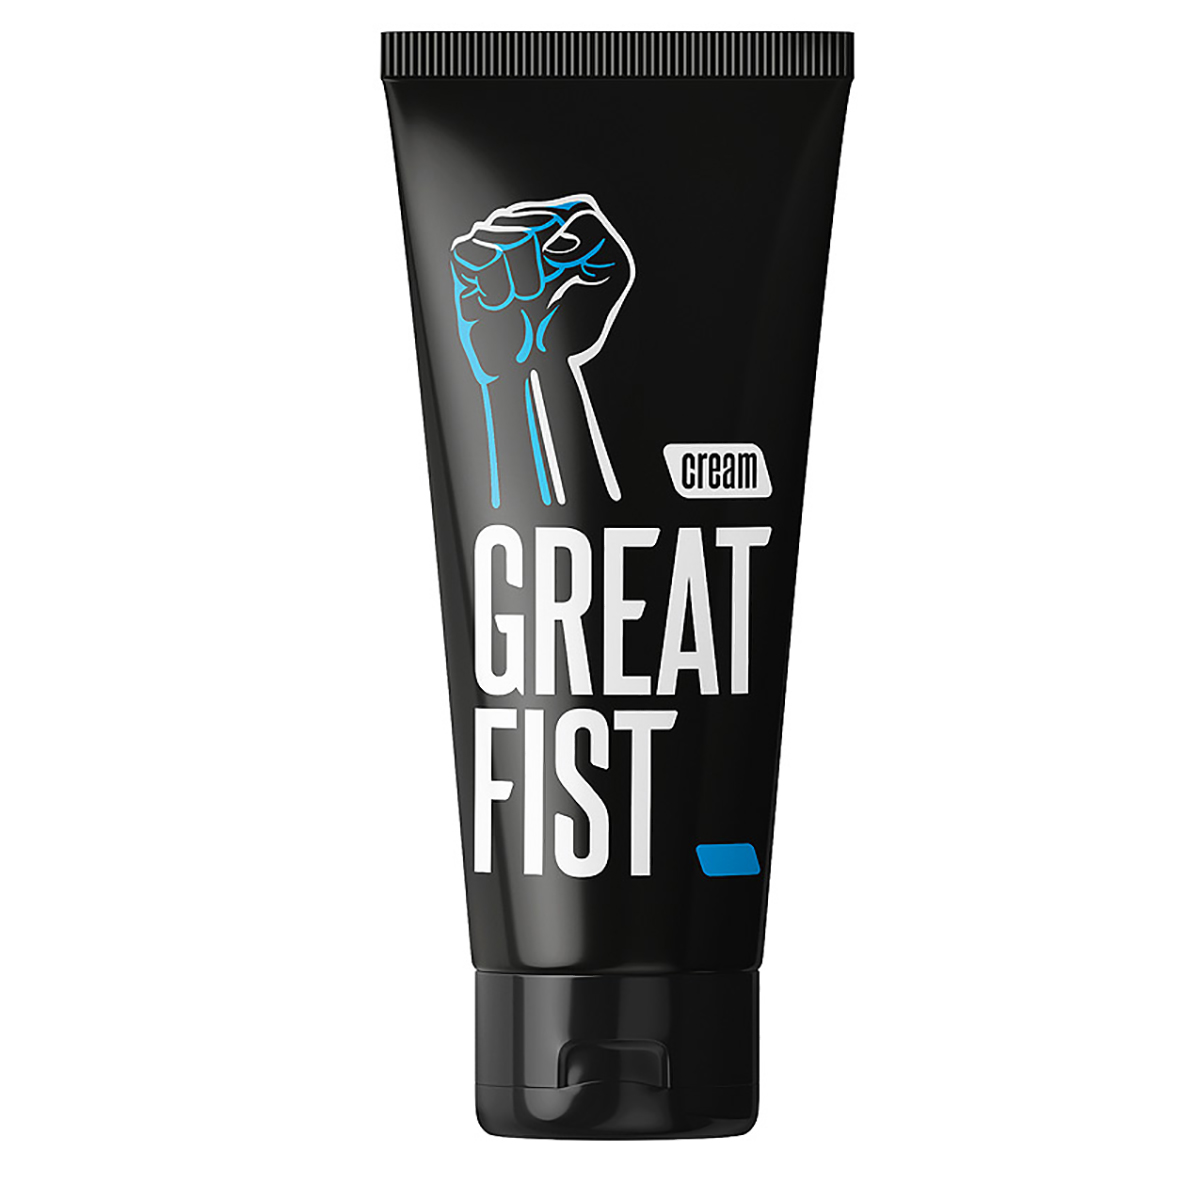 Great fist - Крем для ручного массажа, 50 гр